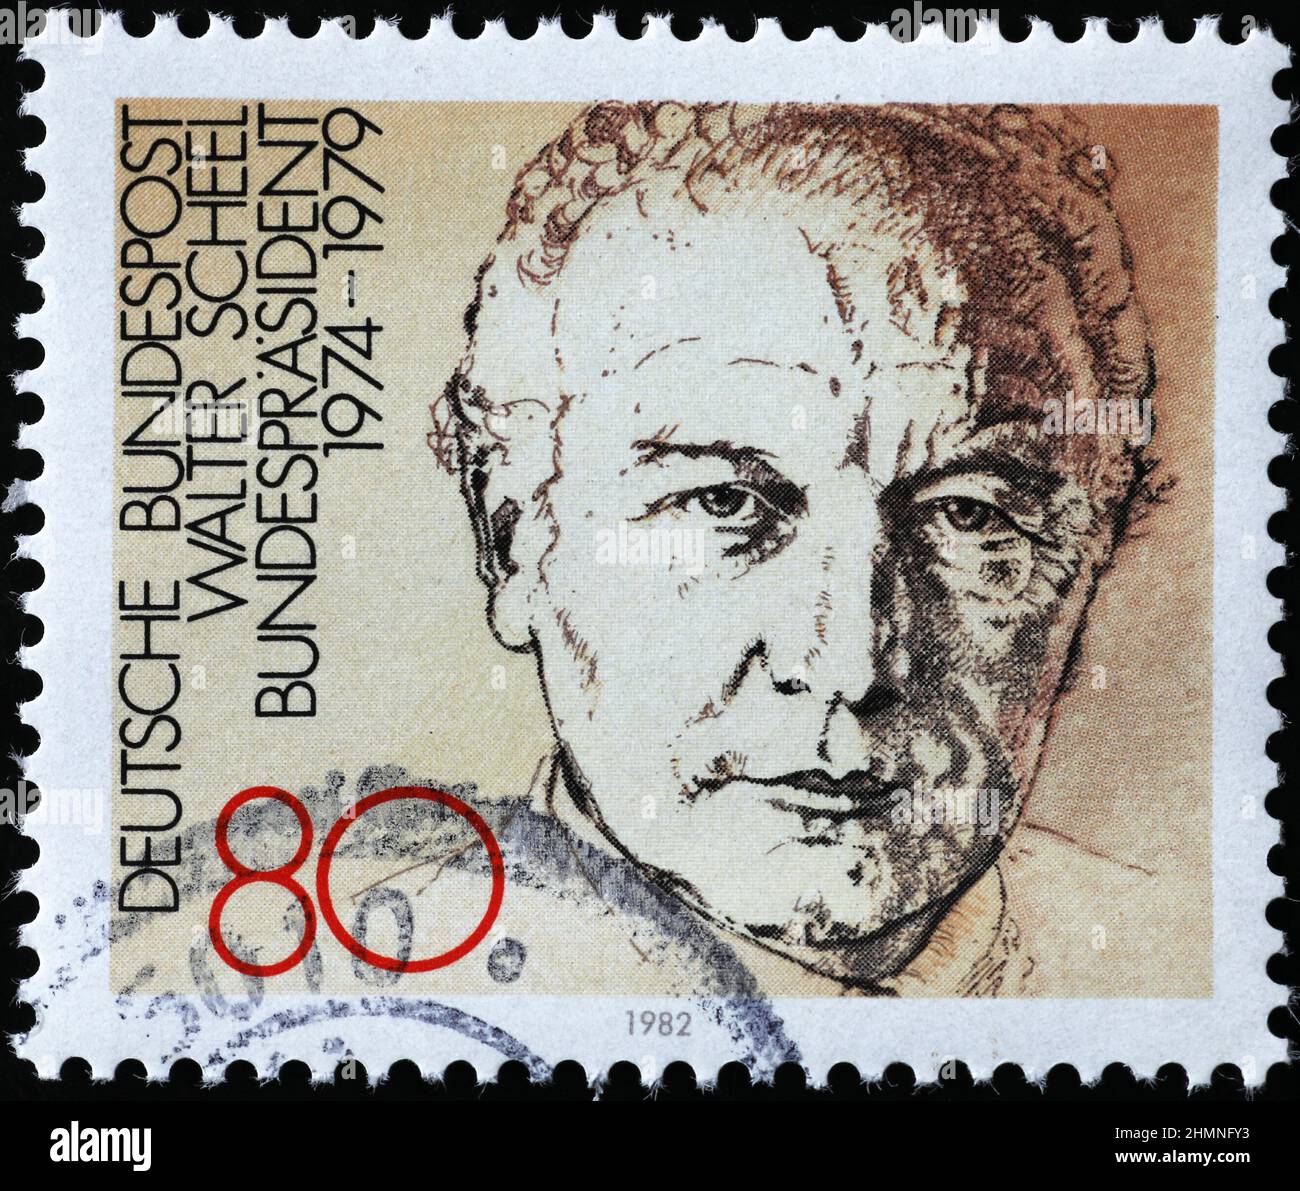 Walter Scheel on german postage stamp Stock Photo